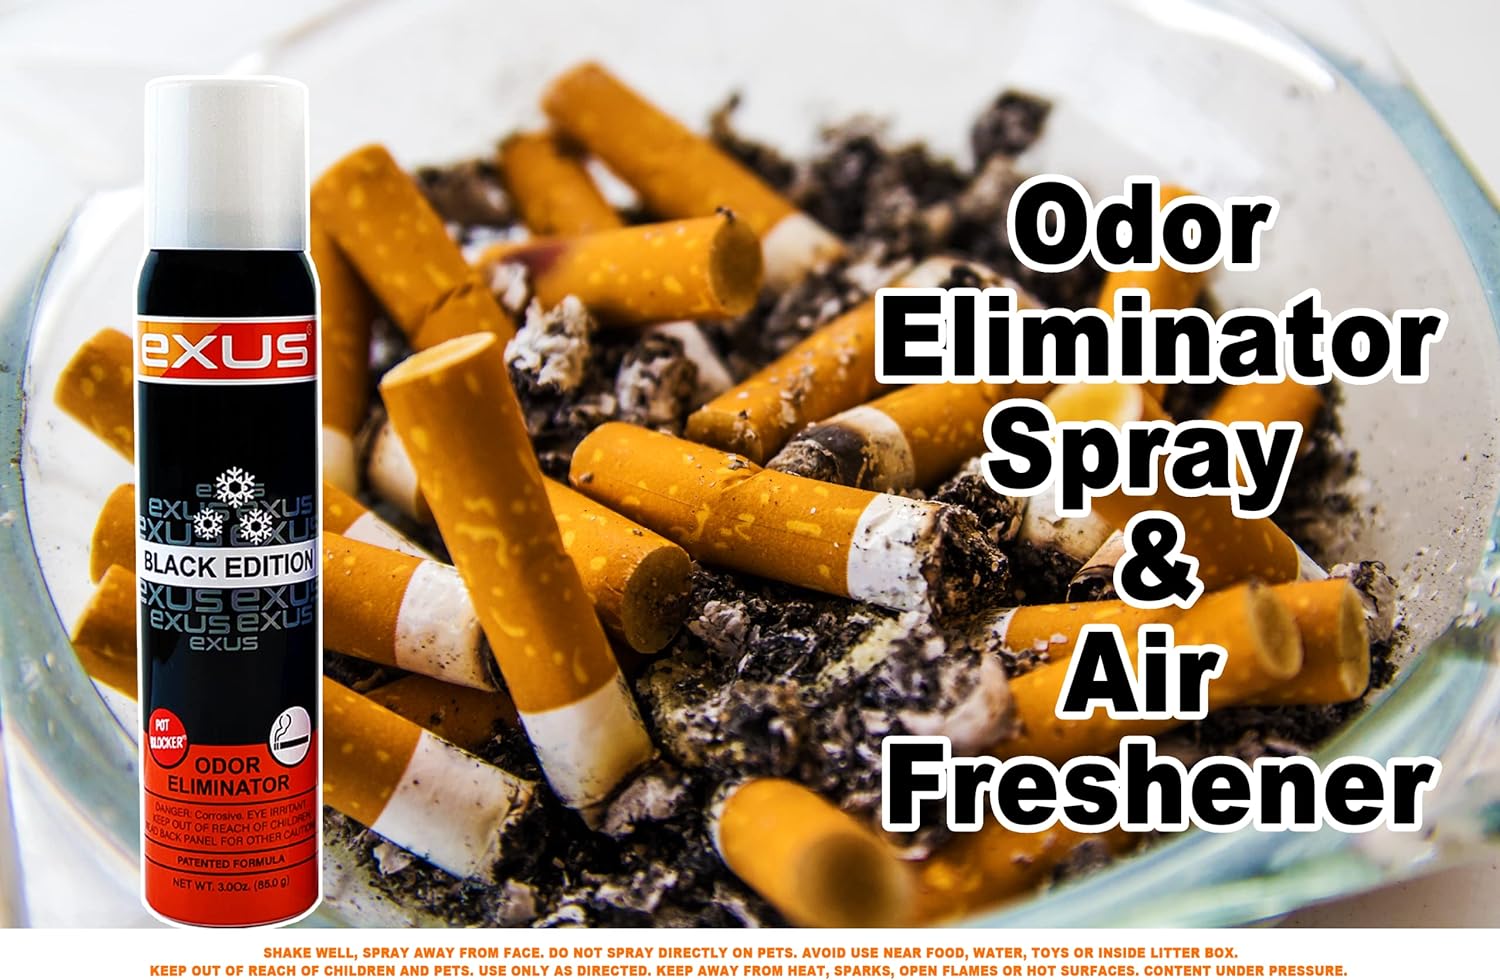 Exus Odor Eliminator & Air Freshener Spray For Strong Odor, Pet Odor Eliminator, Room Spray, Car Freshener (3 Pack) (Black Edition) : Health & Household